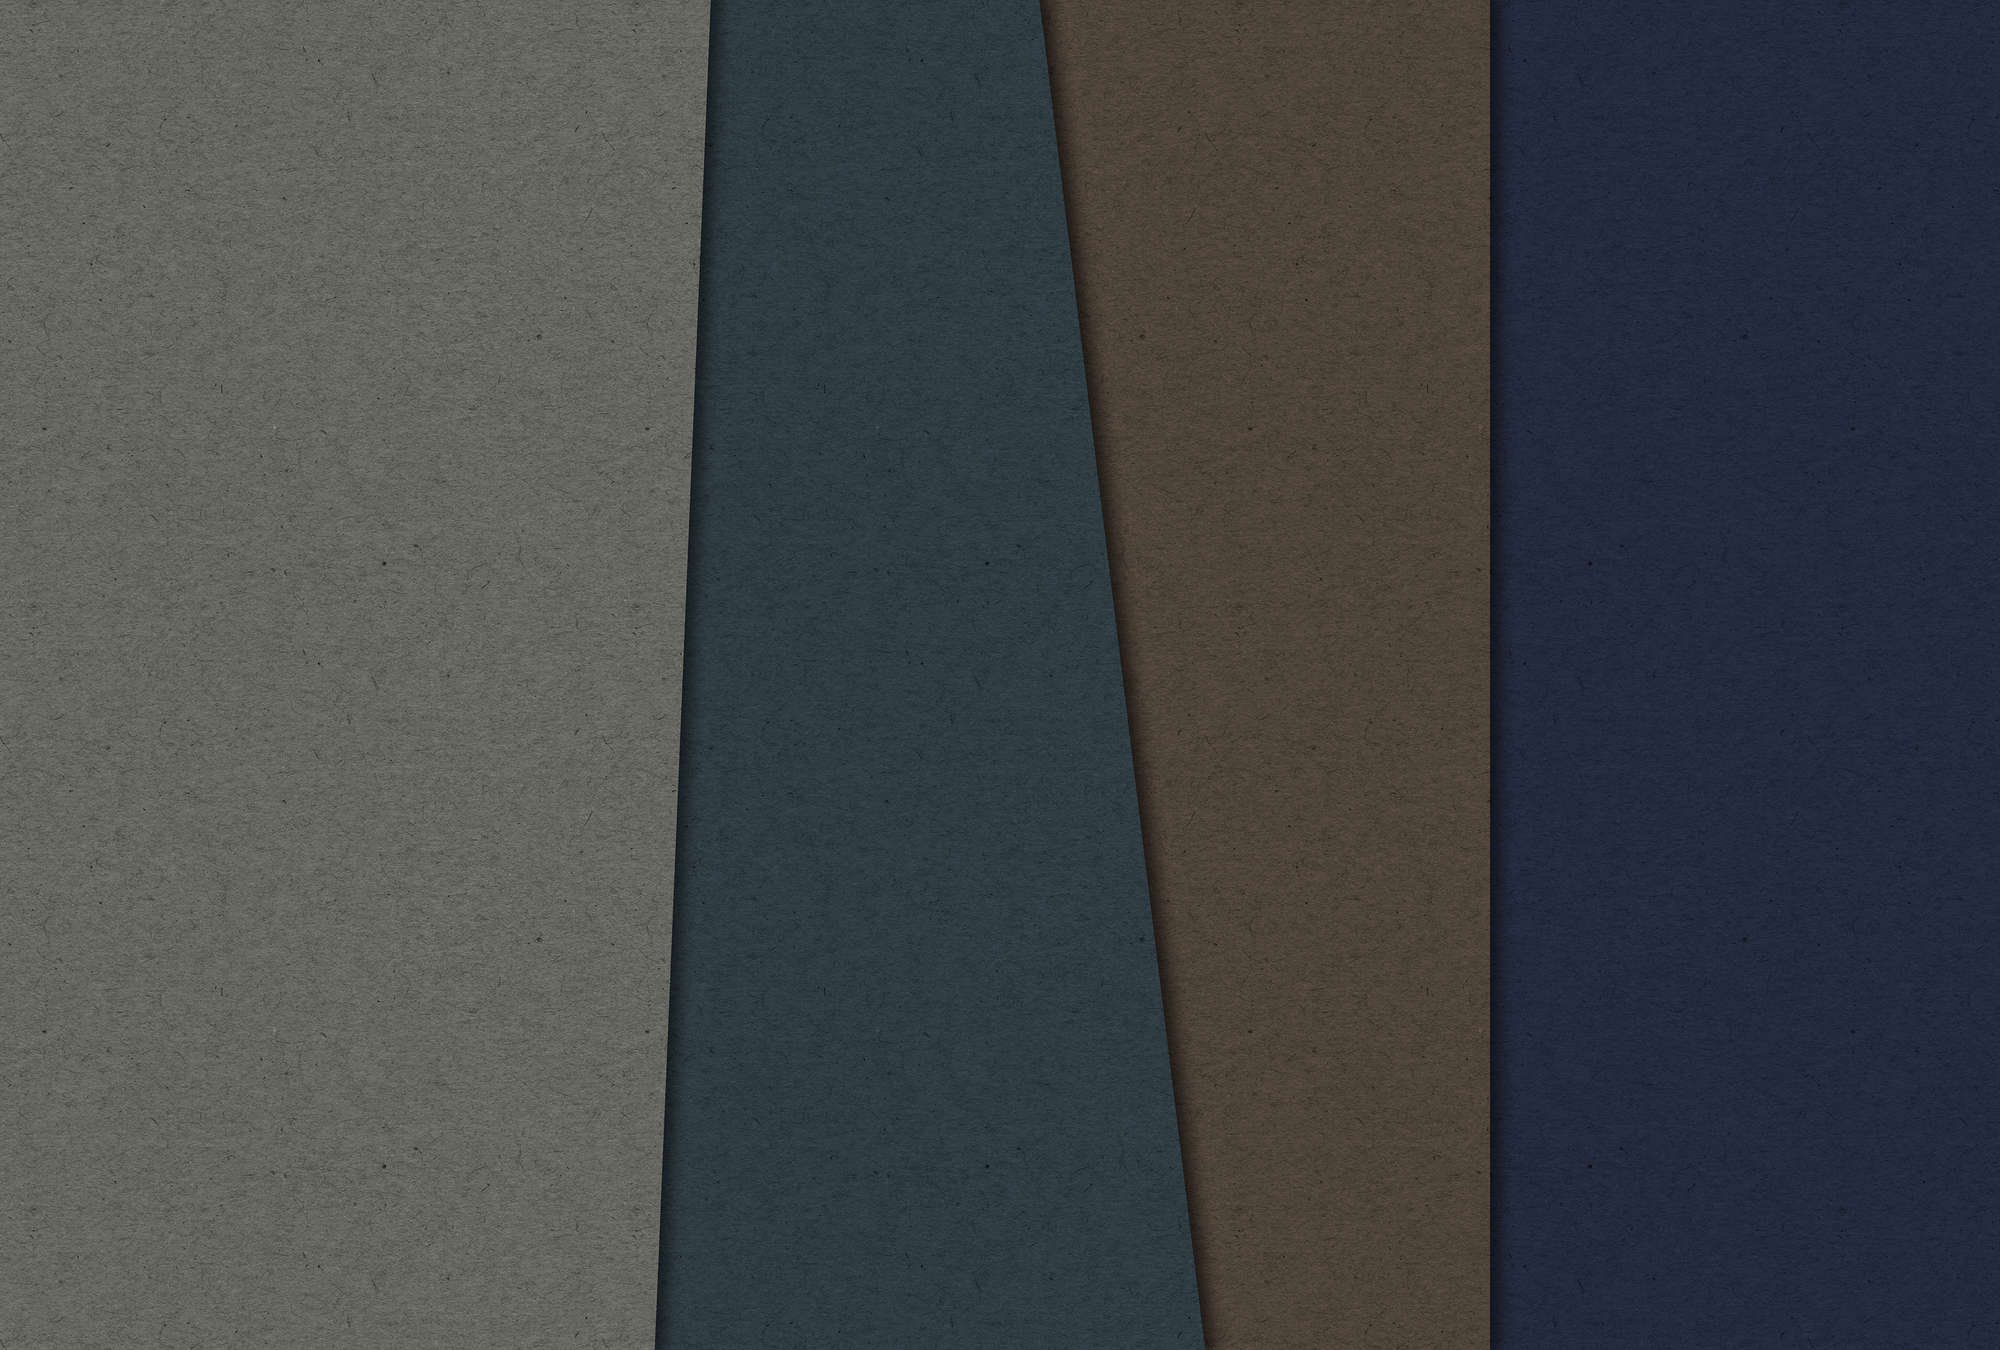             Layered Cardboard 2 - Carta da parati fotografica con struttura in cartone e campi di colore scuro - Blu, Marrone | Vello liscio premium
        